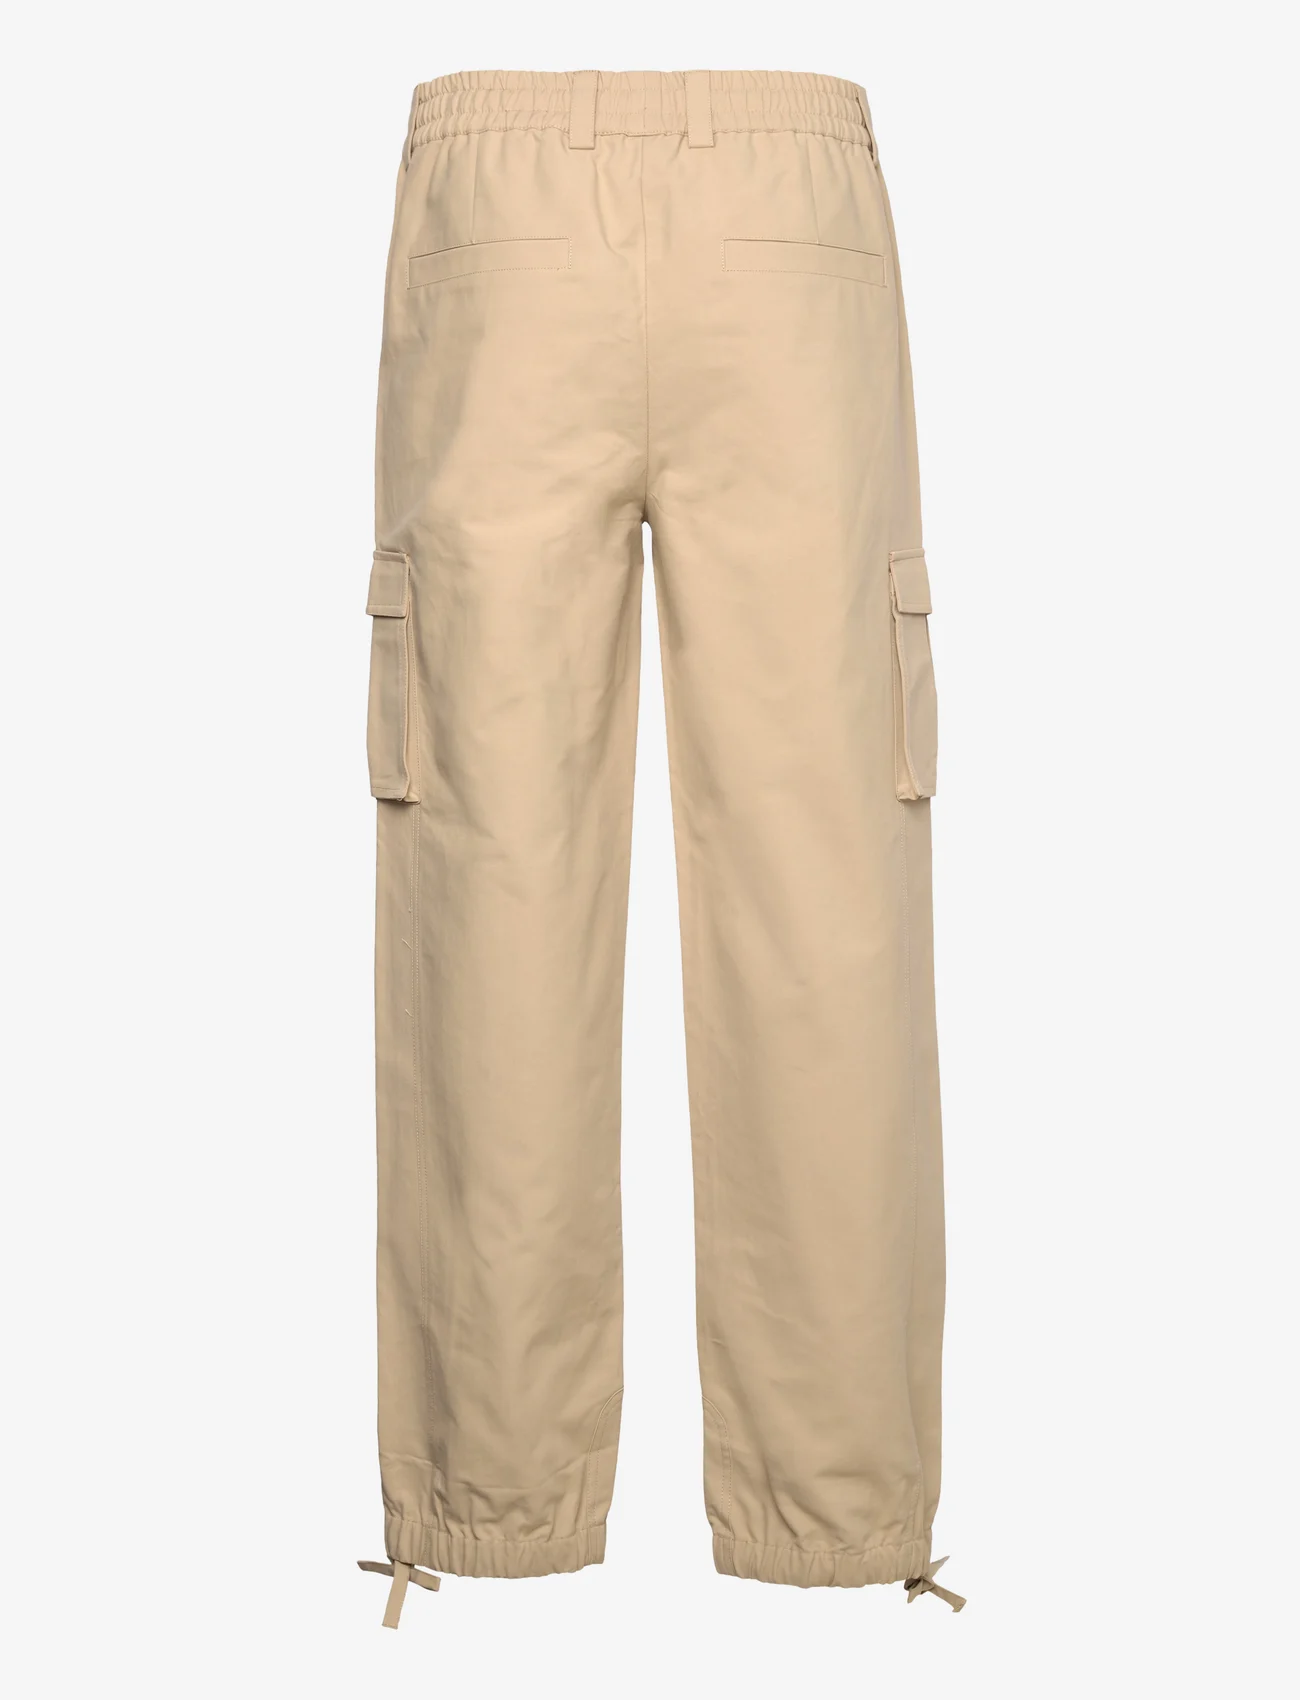 HOLZWEILER - Tribeca Cargo Trousers - cargobroeken - beige - 1